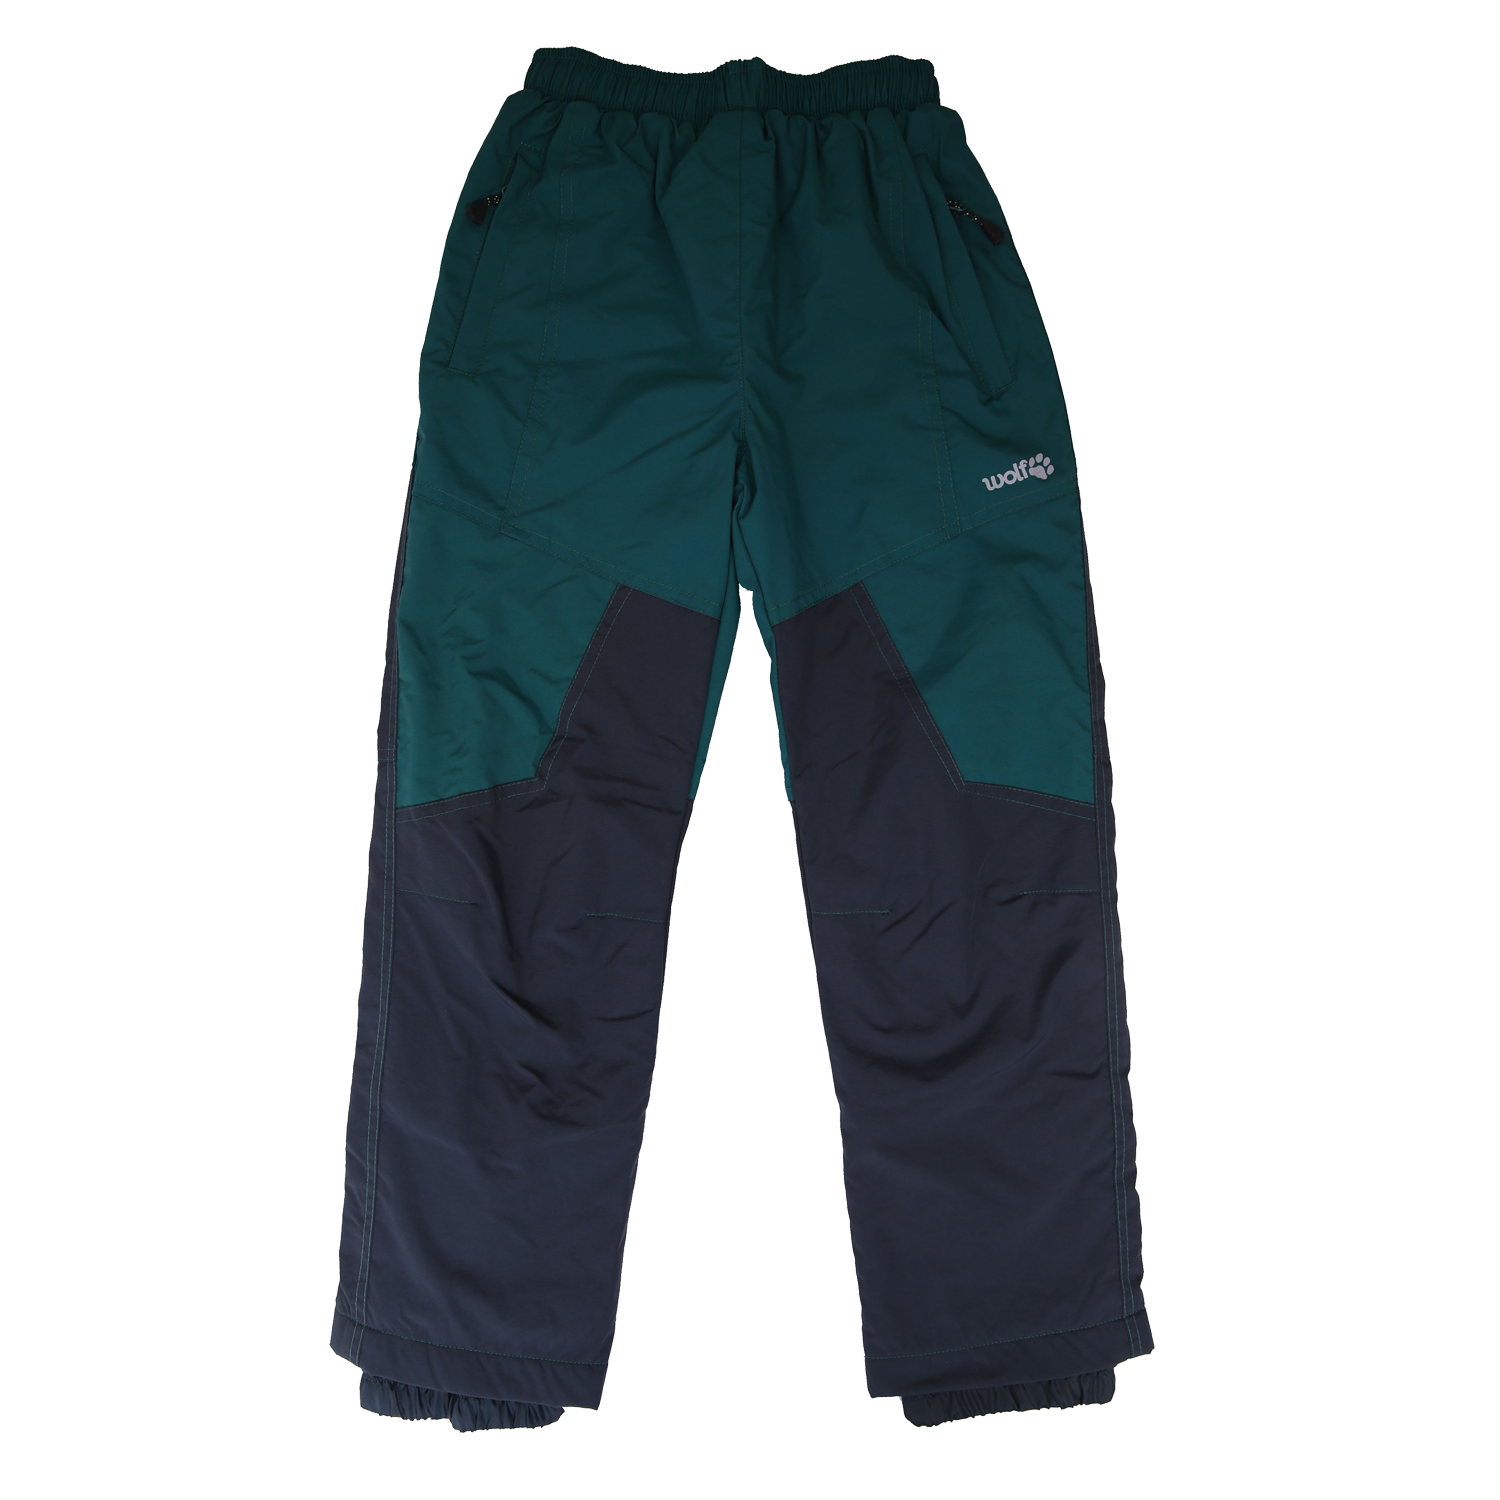 Chlapecké šusťákové kalhoty, zateplené - Wolf B2174, zelená/ šedá Barva: Šedá tmavě, Velikost: 98